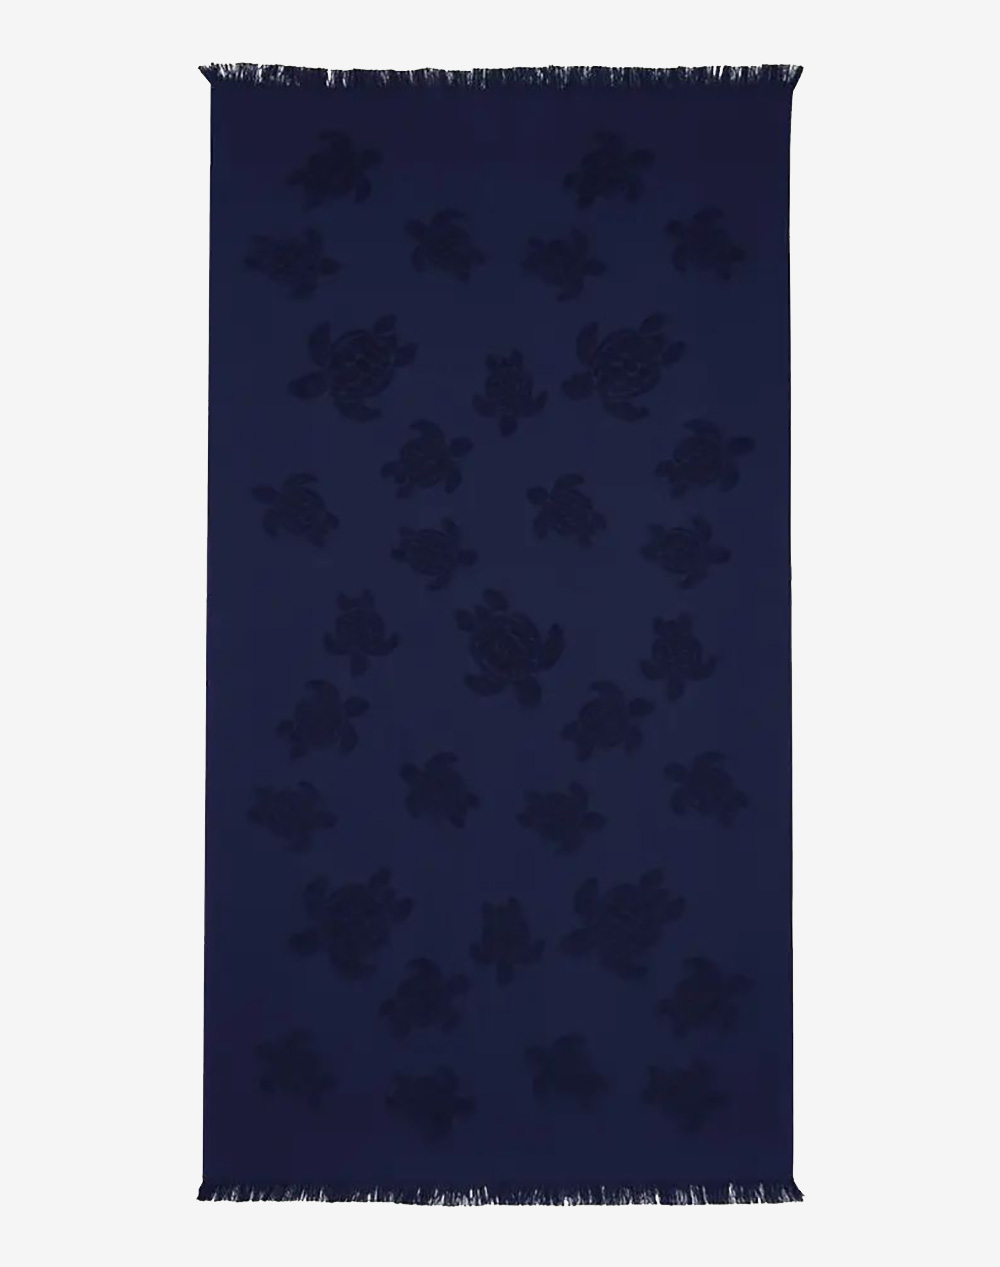 VILEBREQUIN TOWEL (Dimensions: 100 x 188 cm)